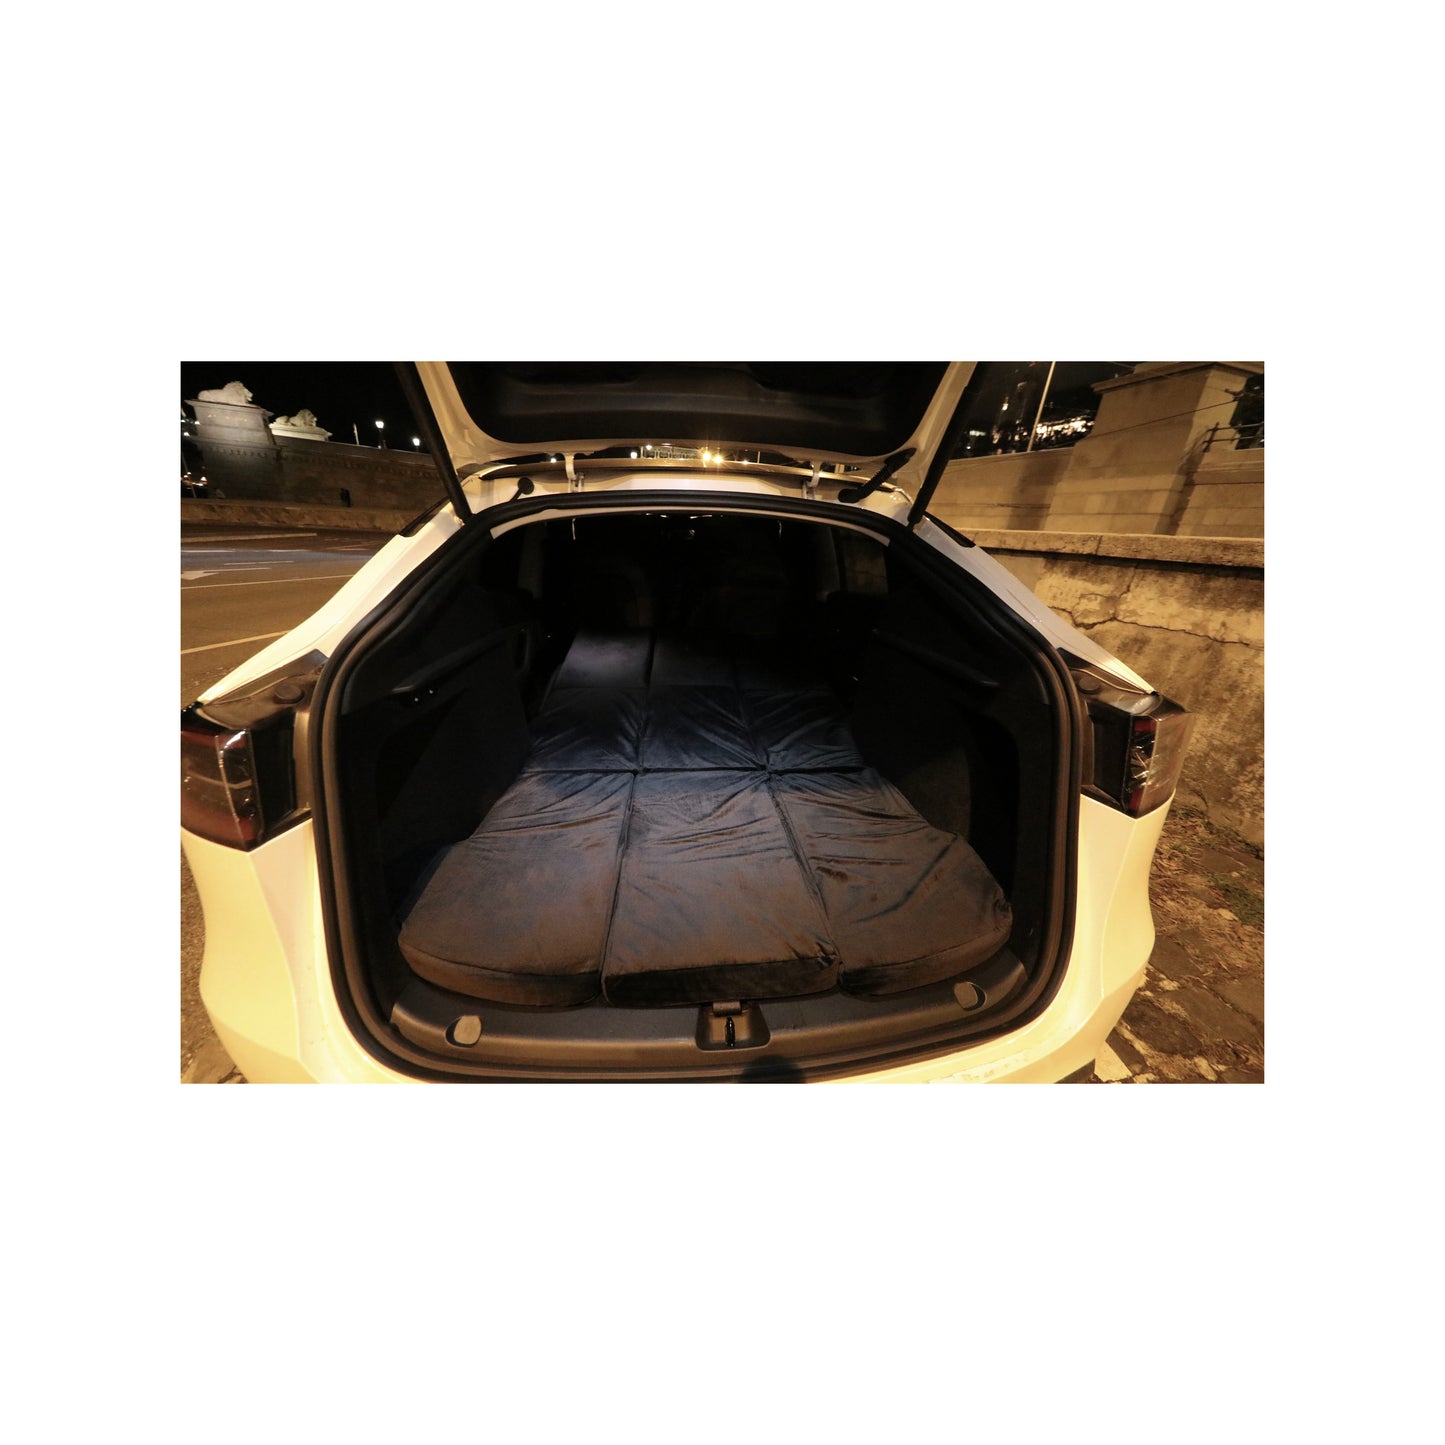 EV-MATS Basic CAMP SET per Tesla Model 3 include il materasso Tesla, la borsa impermeabile che si adatta nel bagagliaio posteriore della Tesla Model 3, un lenzuolo, un piumone, 2 cuscini e una federa